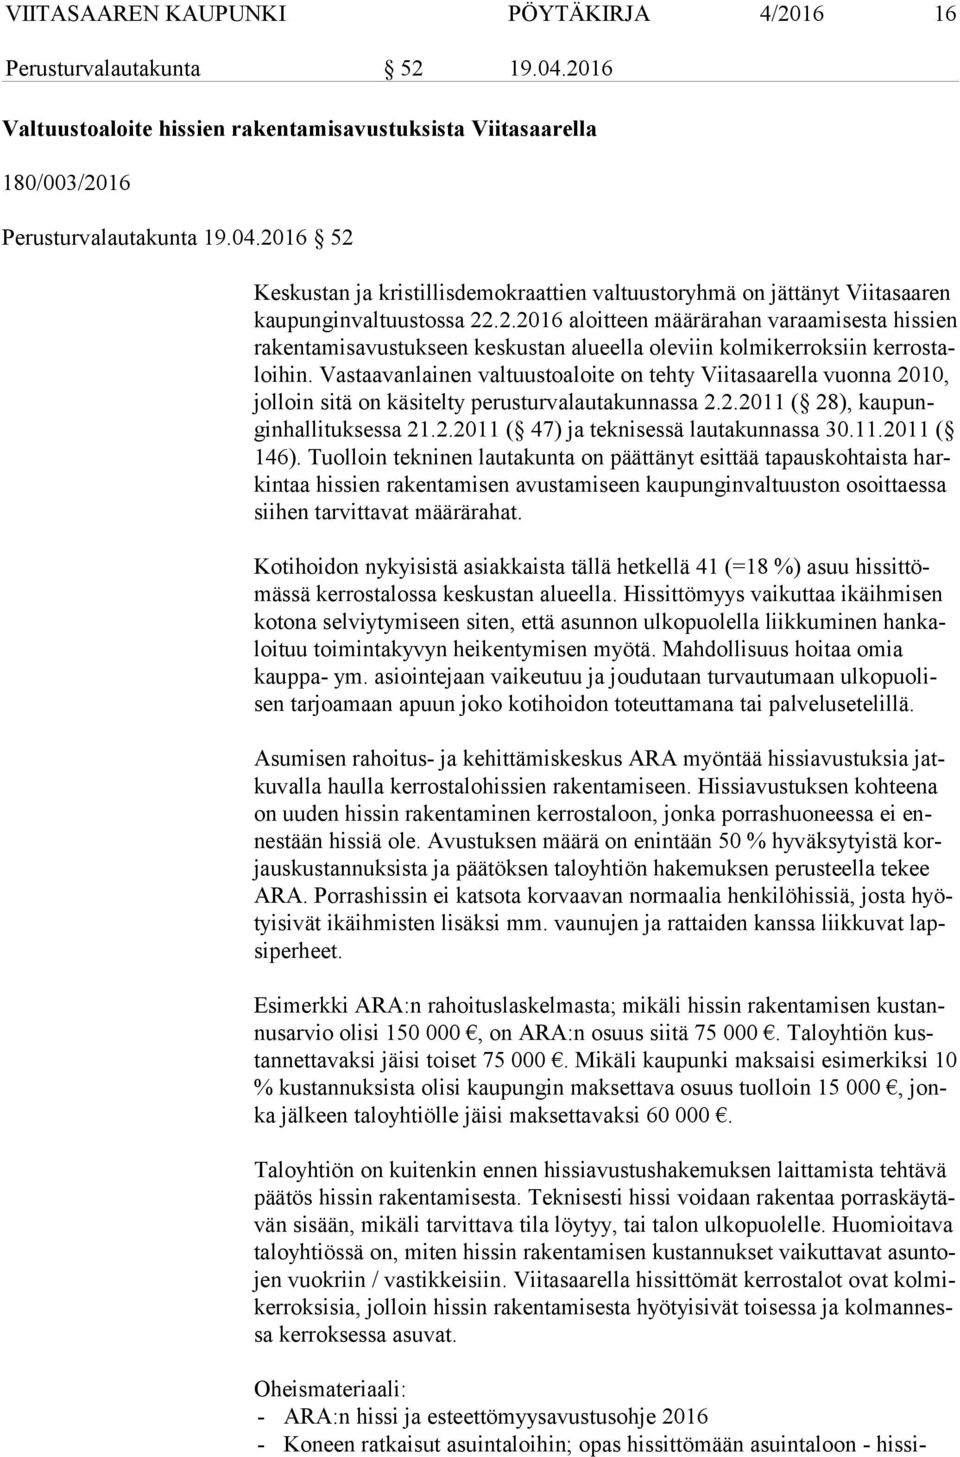 Vastaavanlainen valtuustoaloite on tehty Viitasaarella vuonna 2010, jol loin sitä on käsitelty perusturvalautakunnassa 2.2.2011 ( 28), kau pungin hal li tuk ses sa 21.2.2011 ( 47) ja teknisessä lautakunnassa 30.